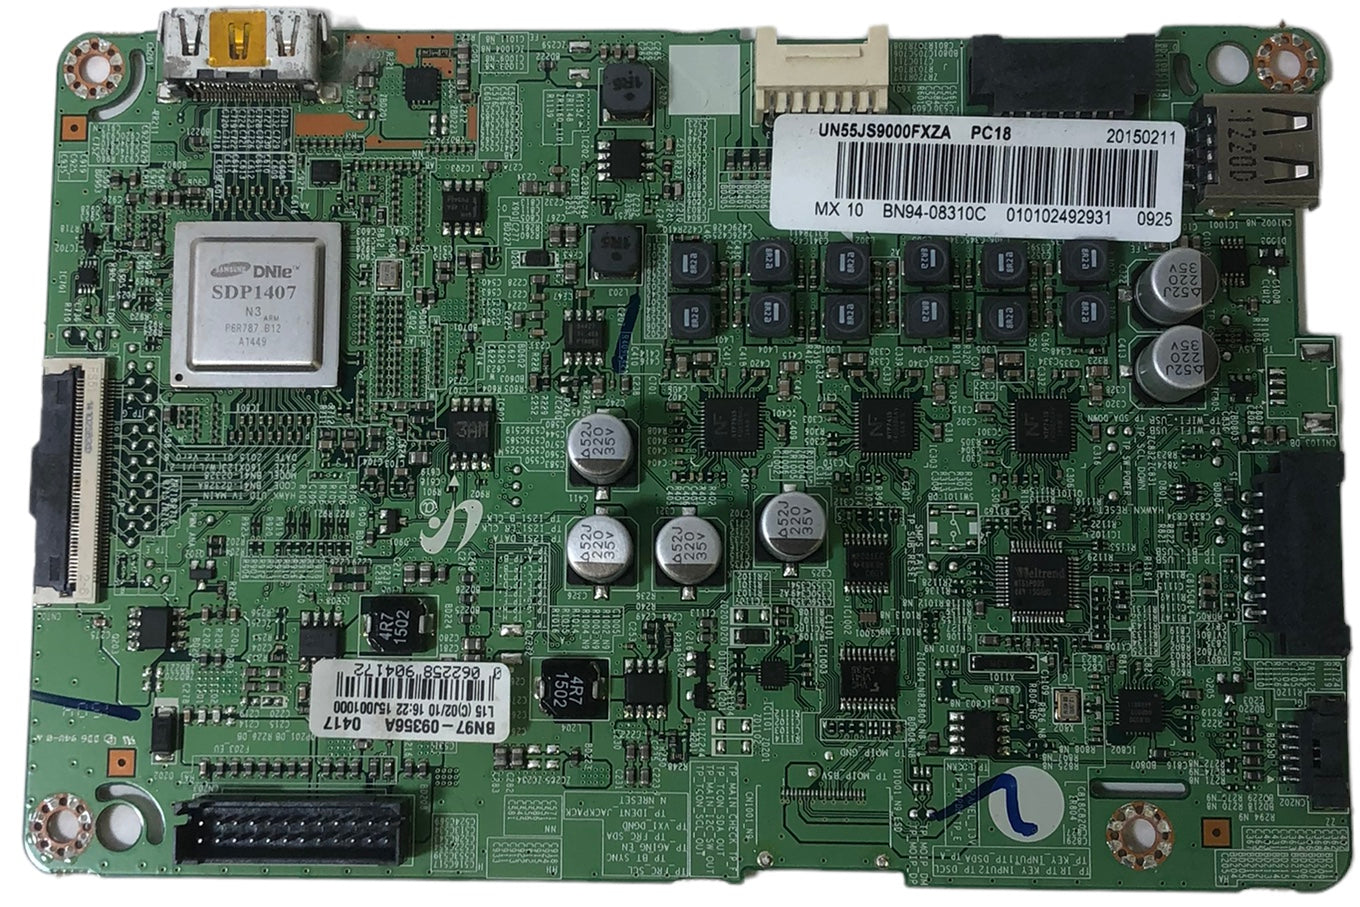 Samsung BN94-08310C Main Board for UN55JS9000FXZA (TS01)